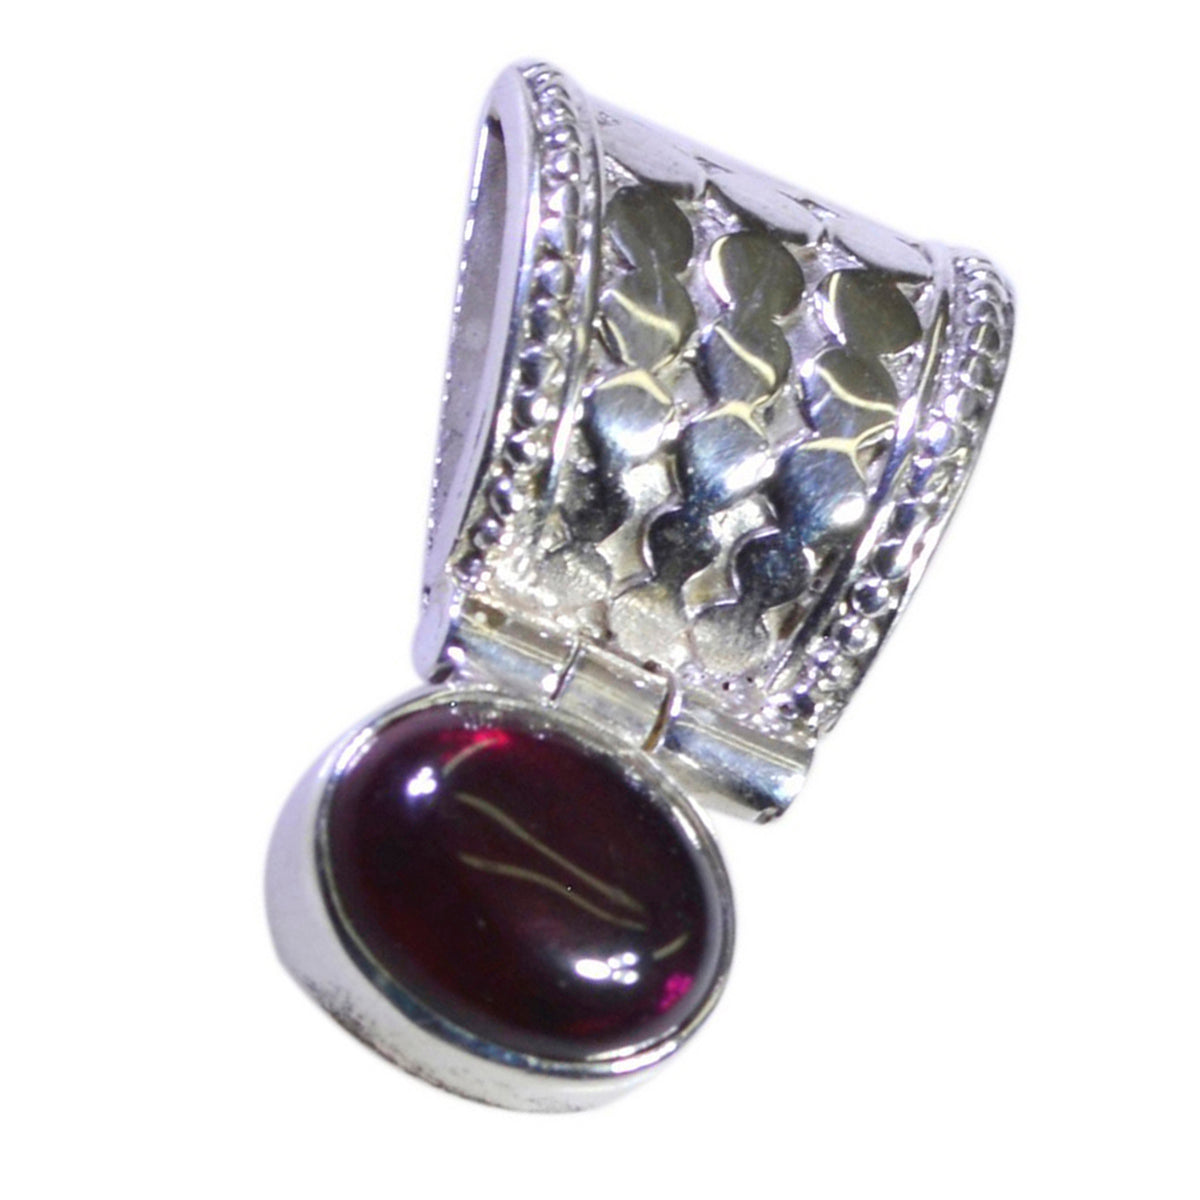 Riyo Pleasing Gems Oval Cabochon Red Garnet Silver Pendant Gift For Wife